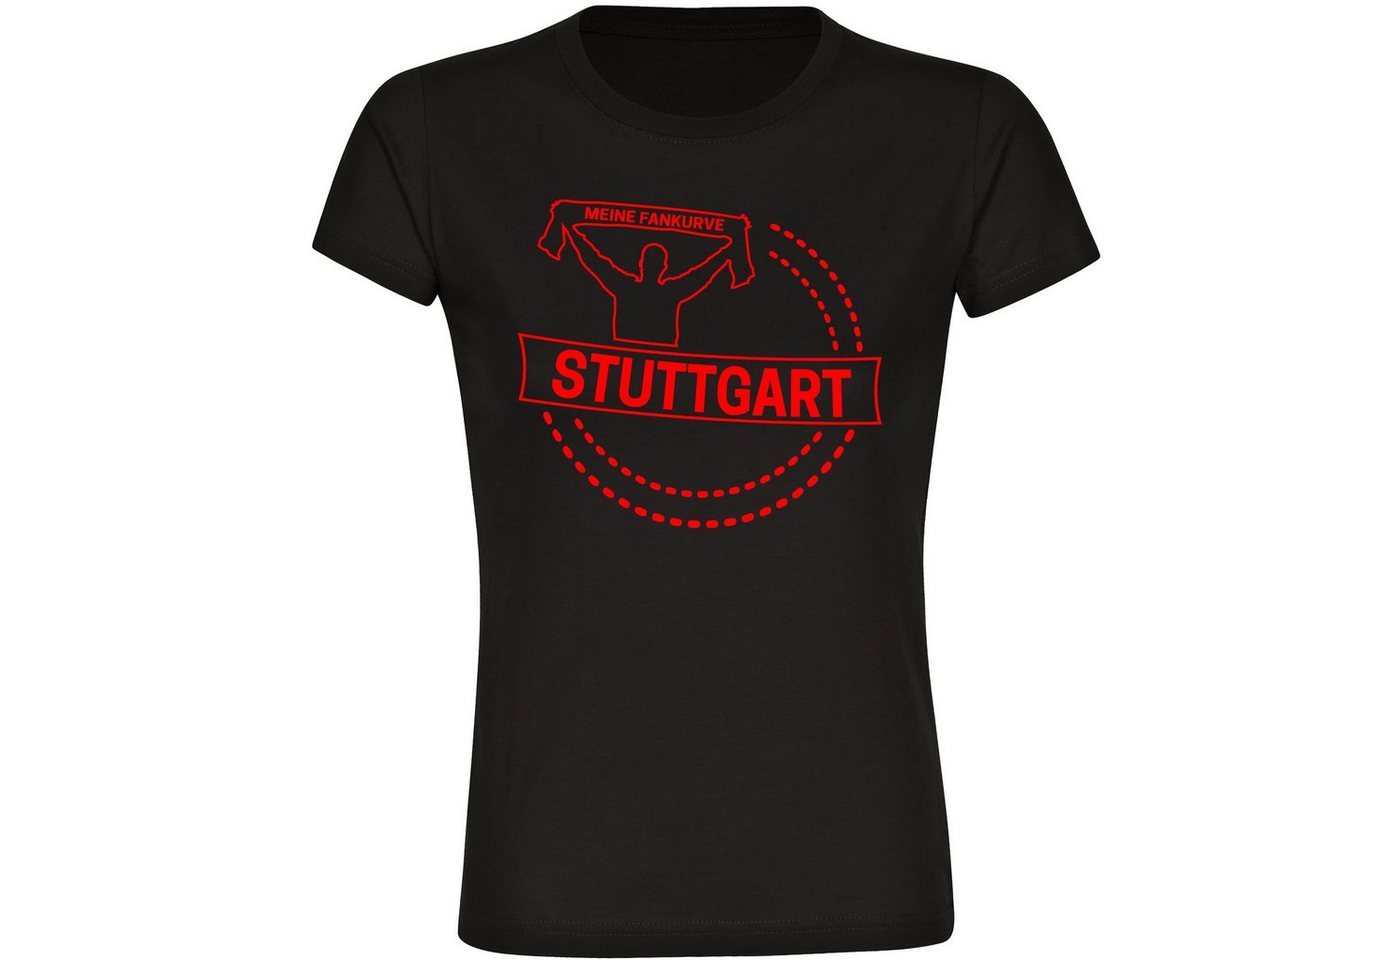 multifanshop T-Shirt Damen Stuttgart - Meine Fankurve - Frauen von multifanshop